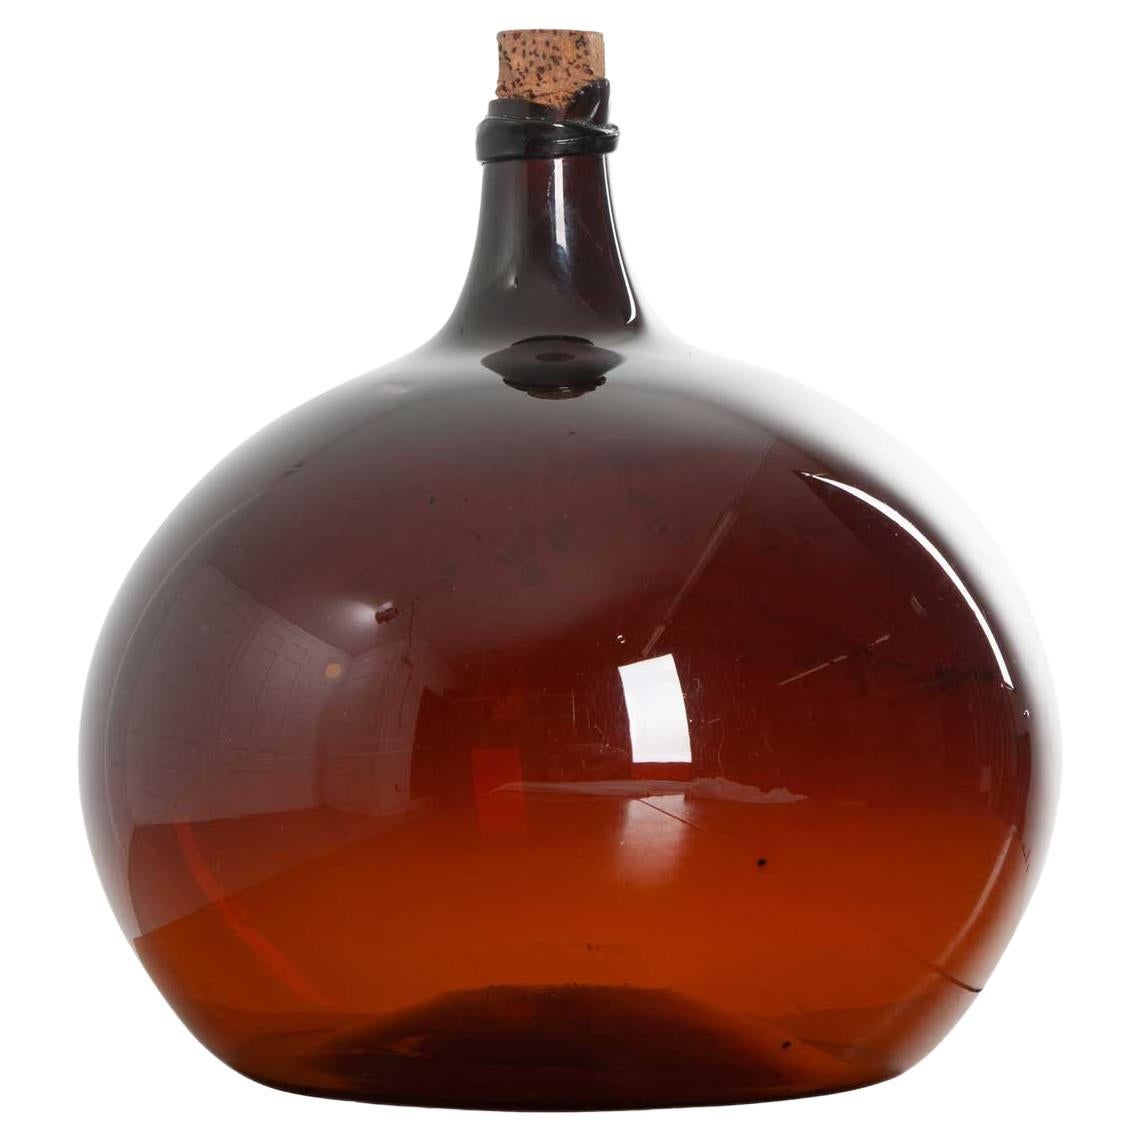 Pichet à vin en verre ambré du 18ème siècle français